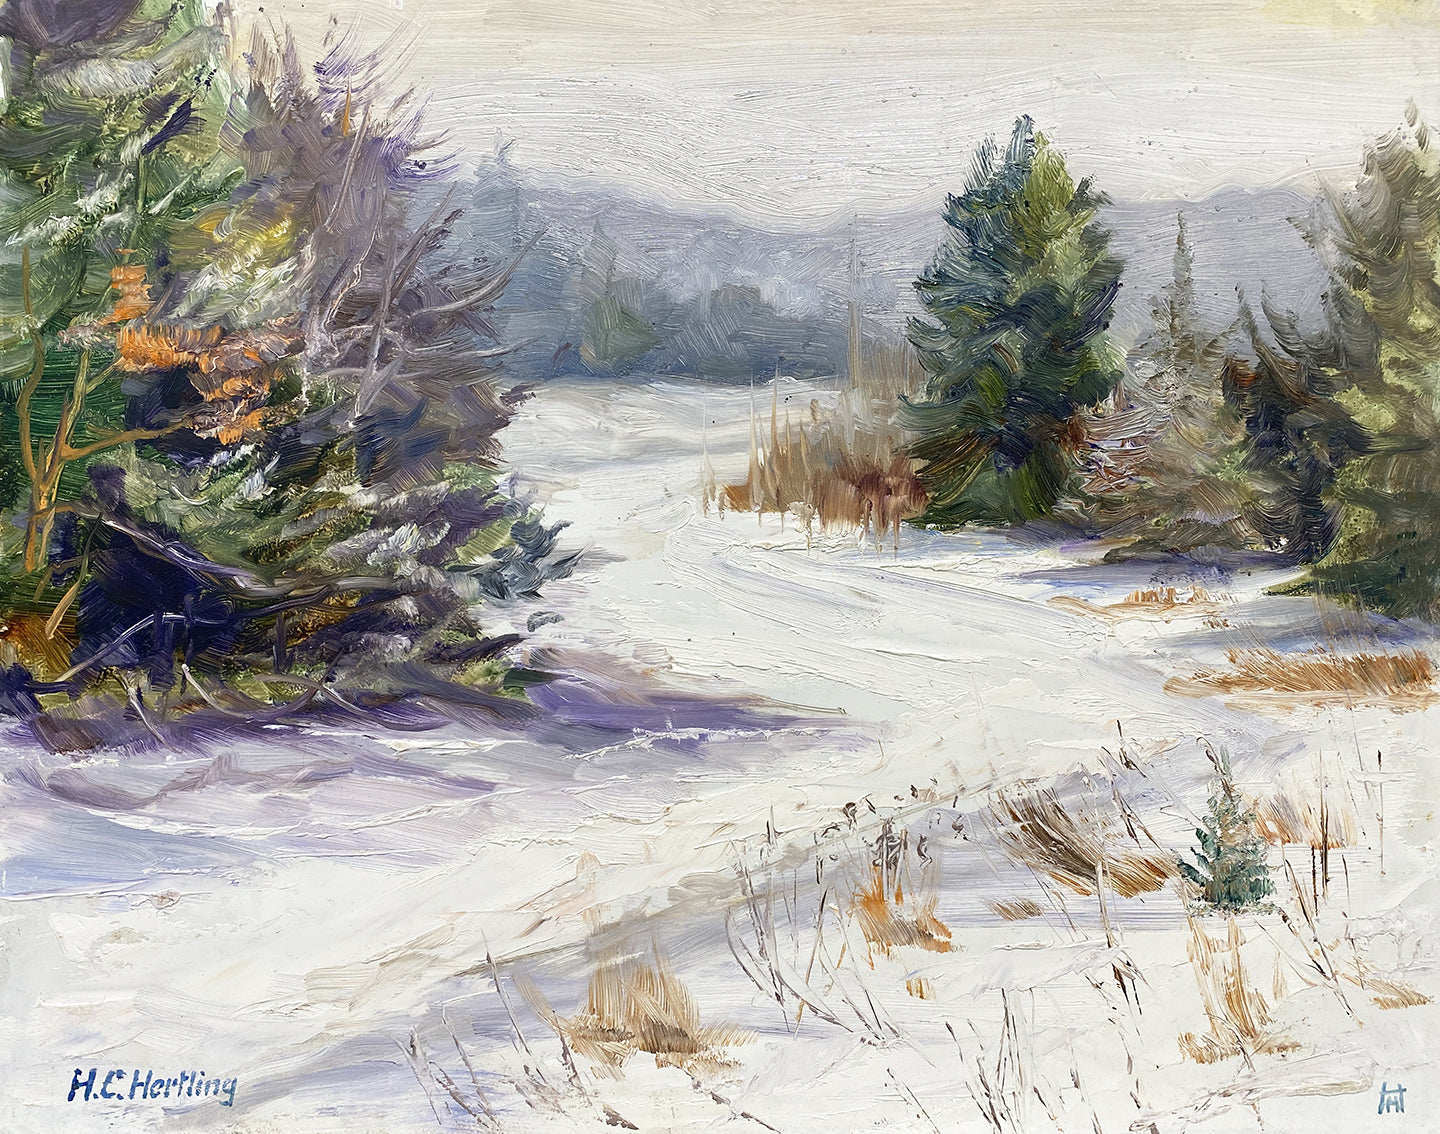 Winter III Oil Painting by Heiner Hertling.